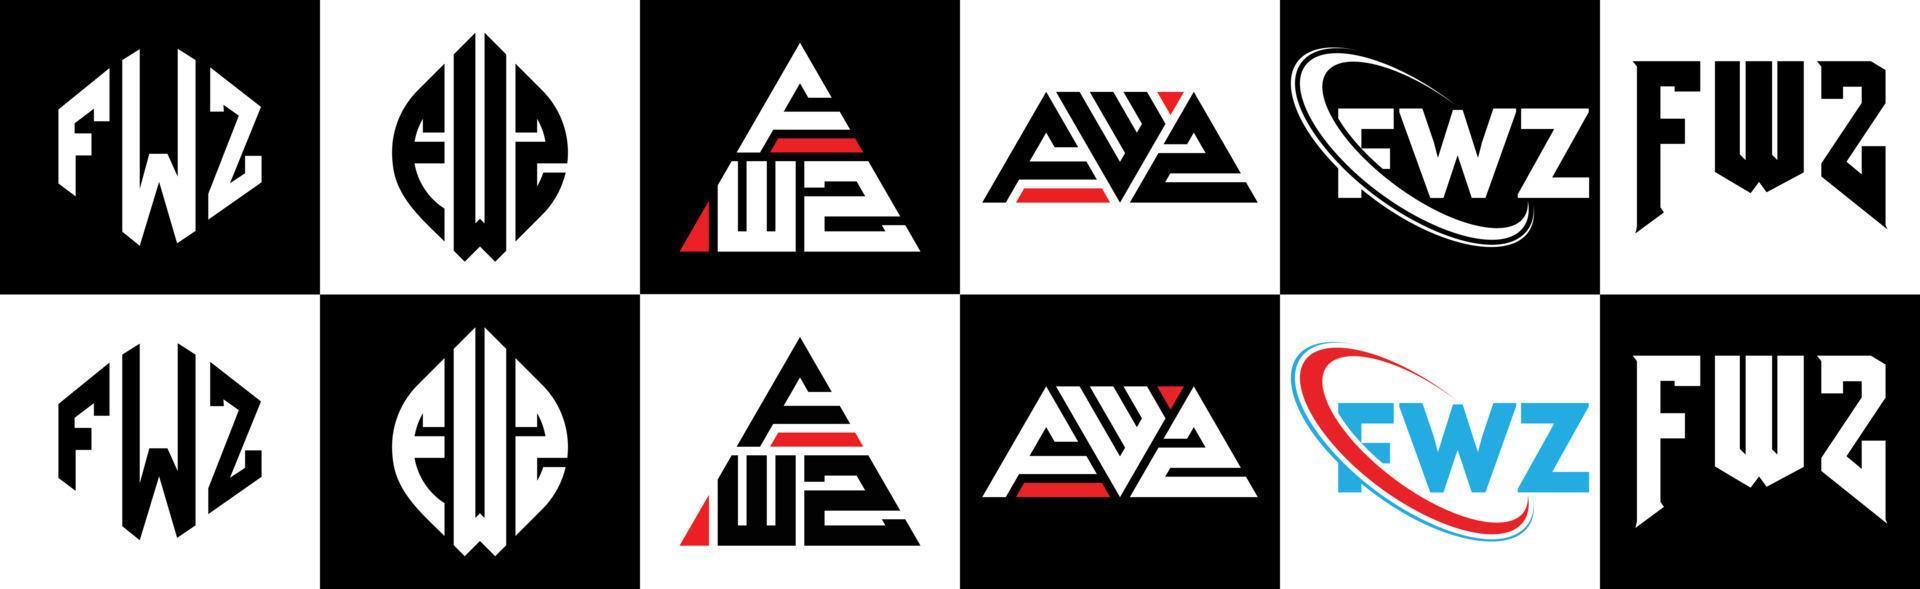 création de logo de lettre fwz en six styles. polygone fwz, cercle, triangle, hexagone, style plat et simple avec logo de lettre de variation de couleur noir et blanc dans un plan de travail. fwz logo minimaliste et classique vecteur